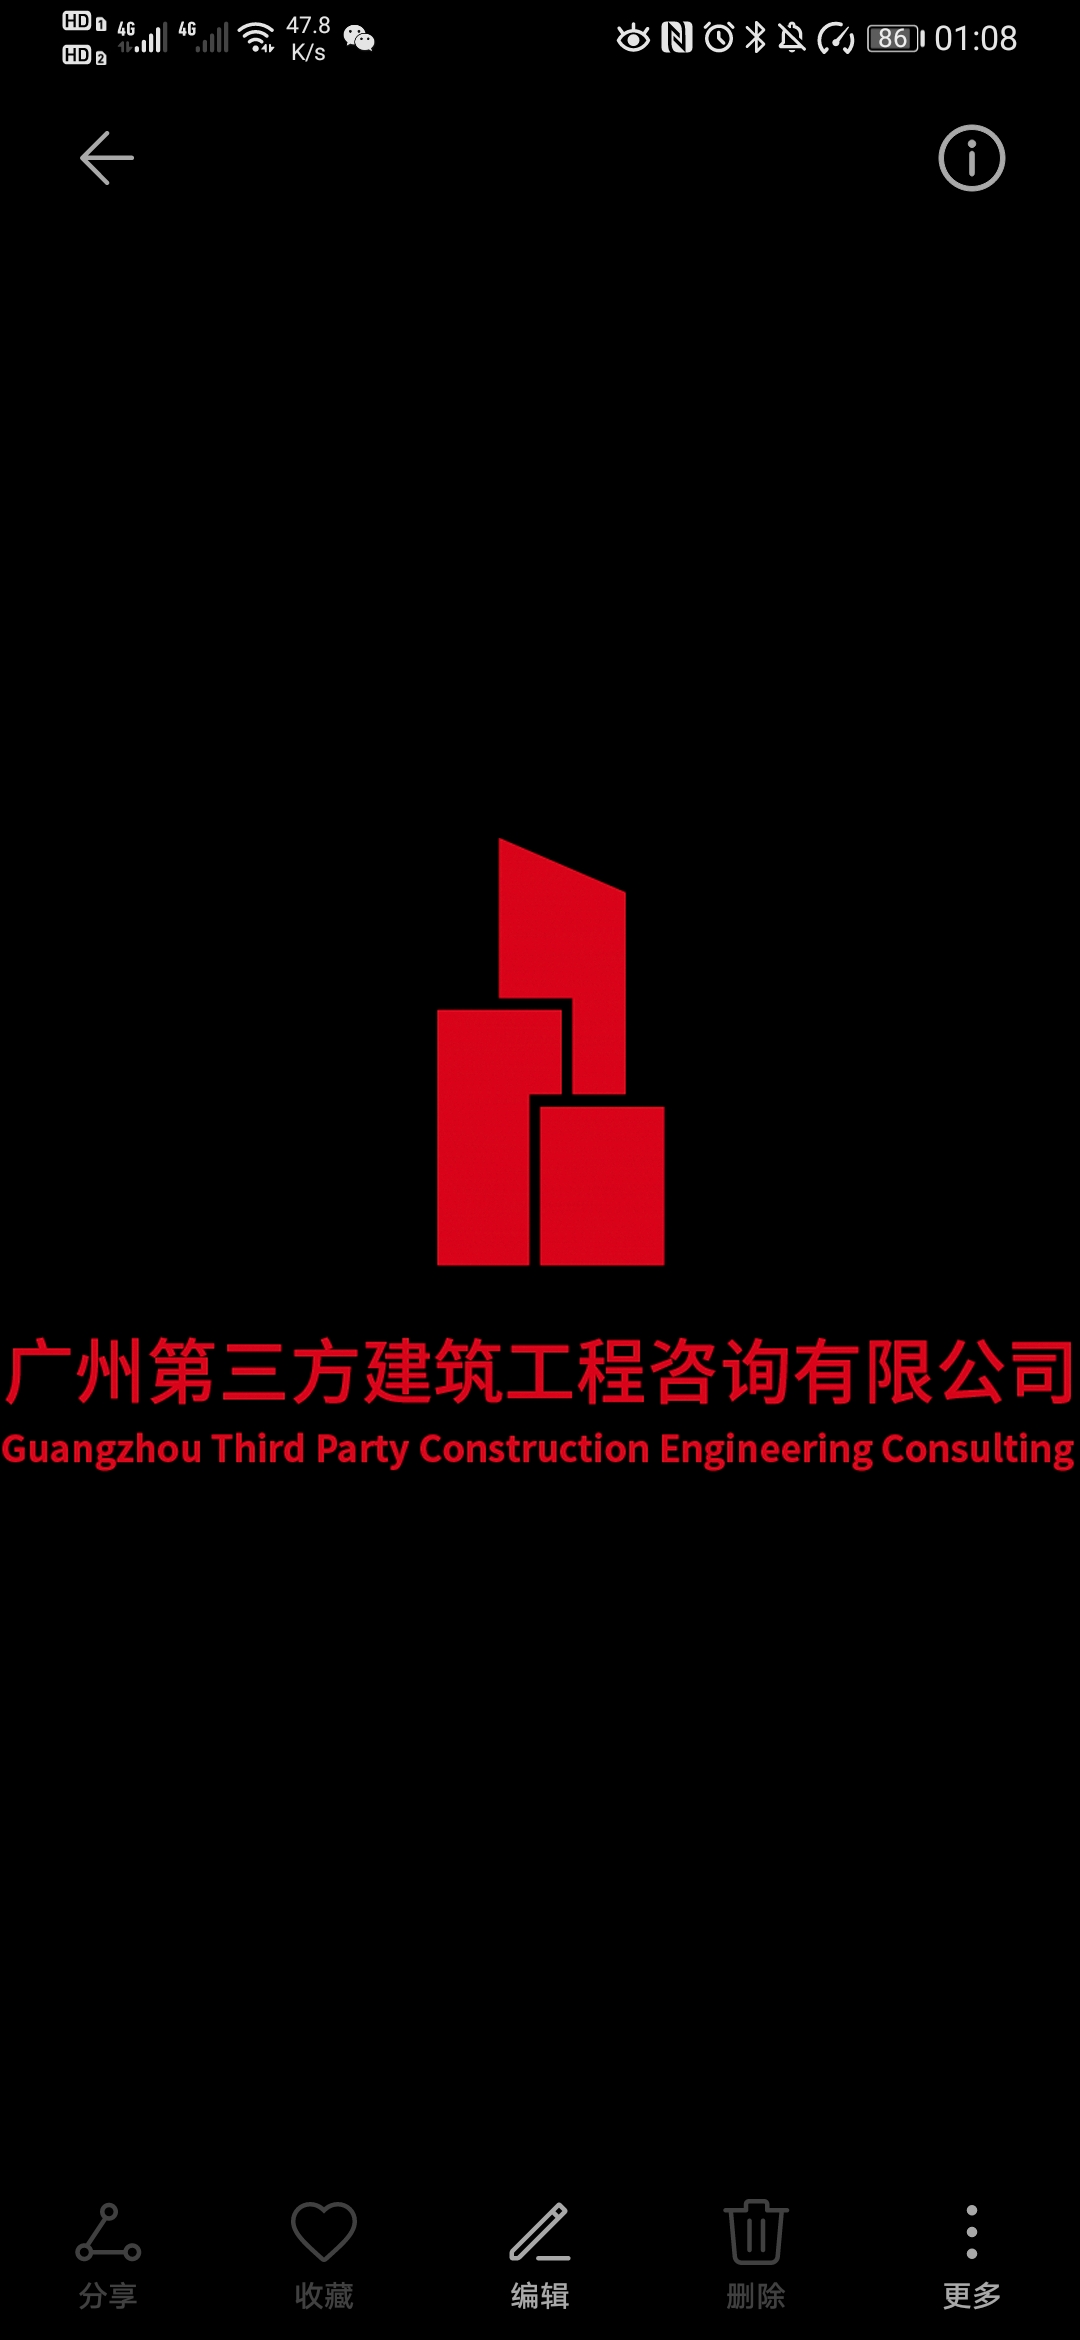 广州第三方建筑工程咨询有限公司